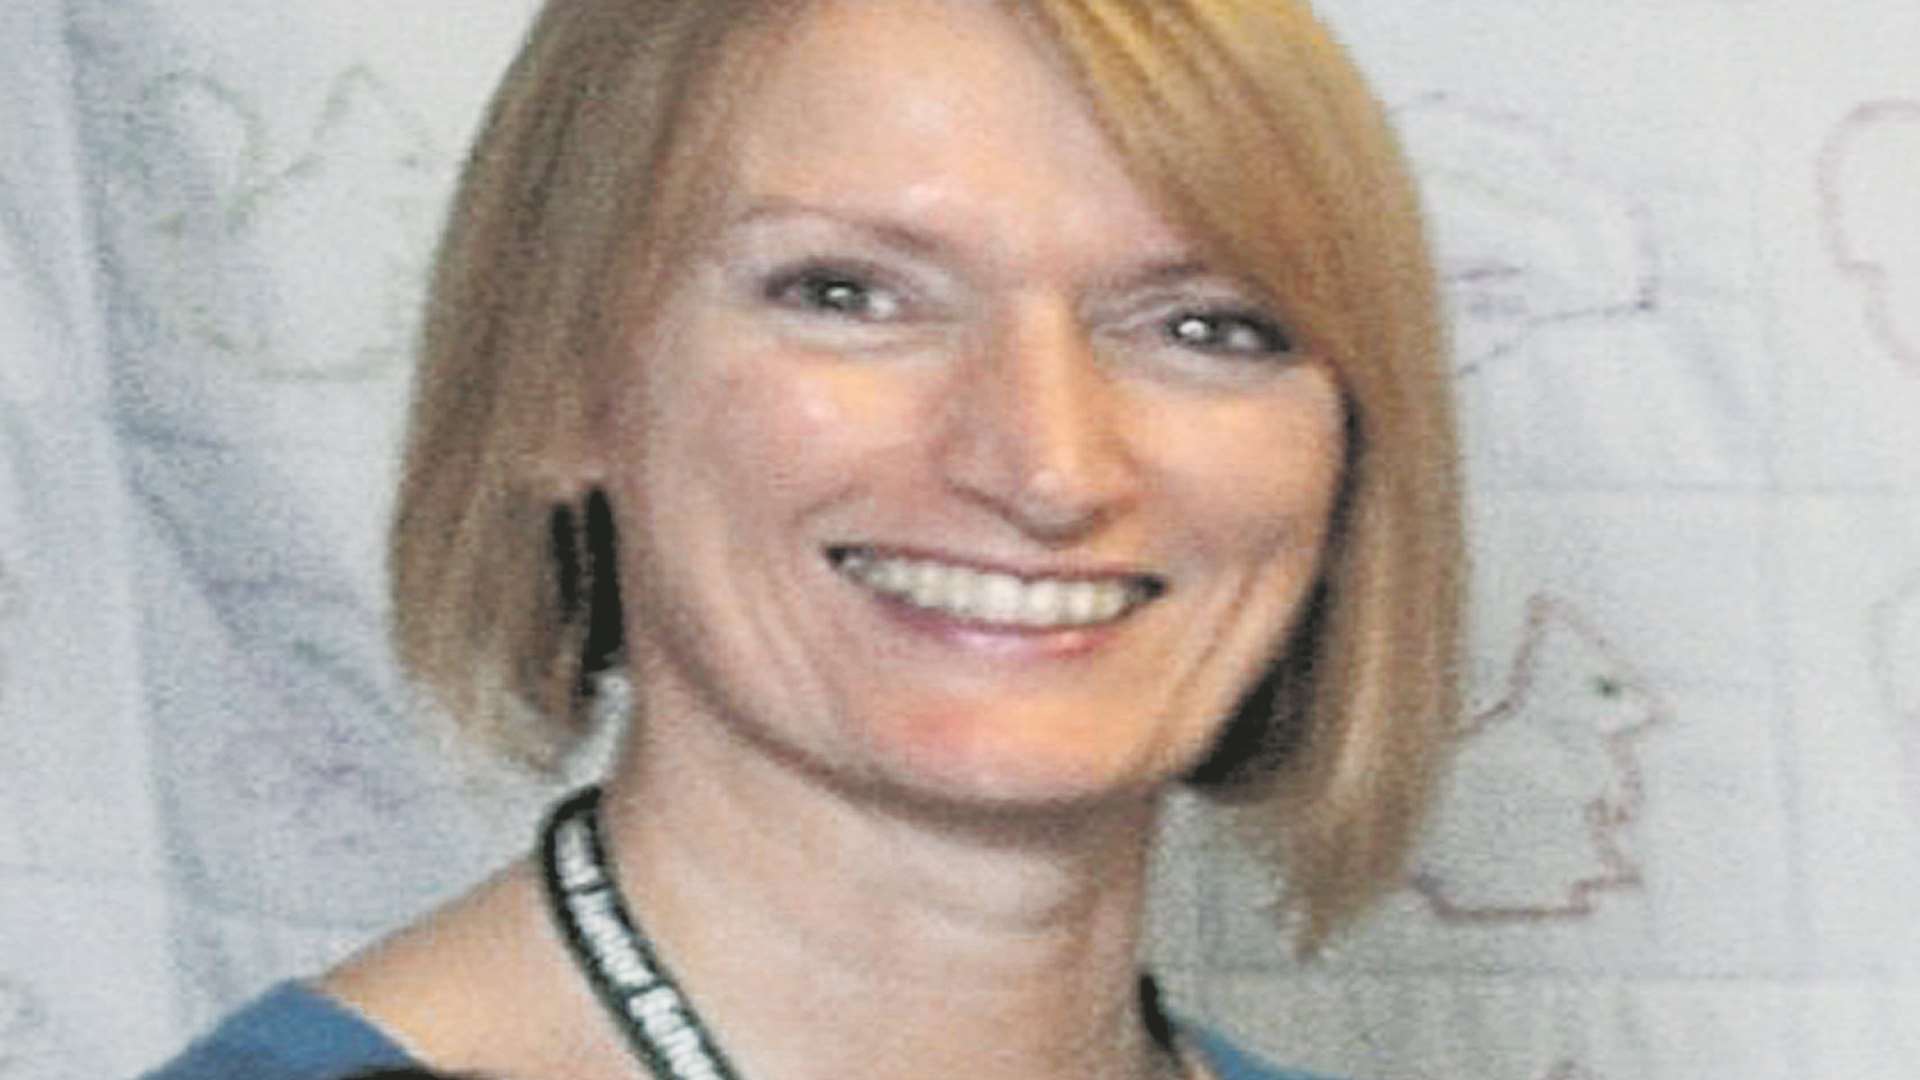 Sharon Smith, head teacher at Hempstead Junior School